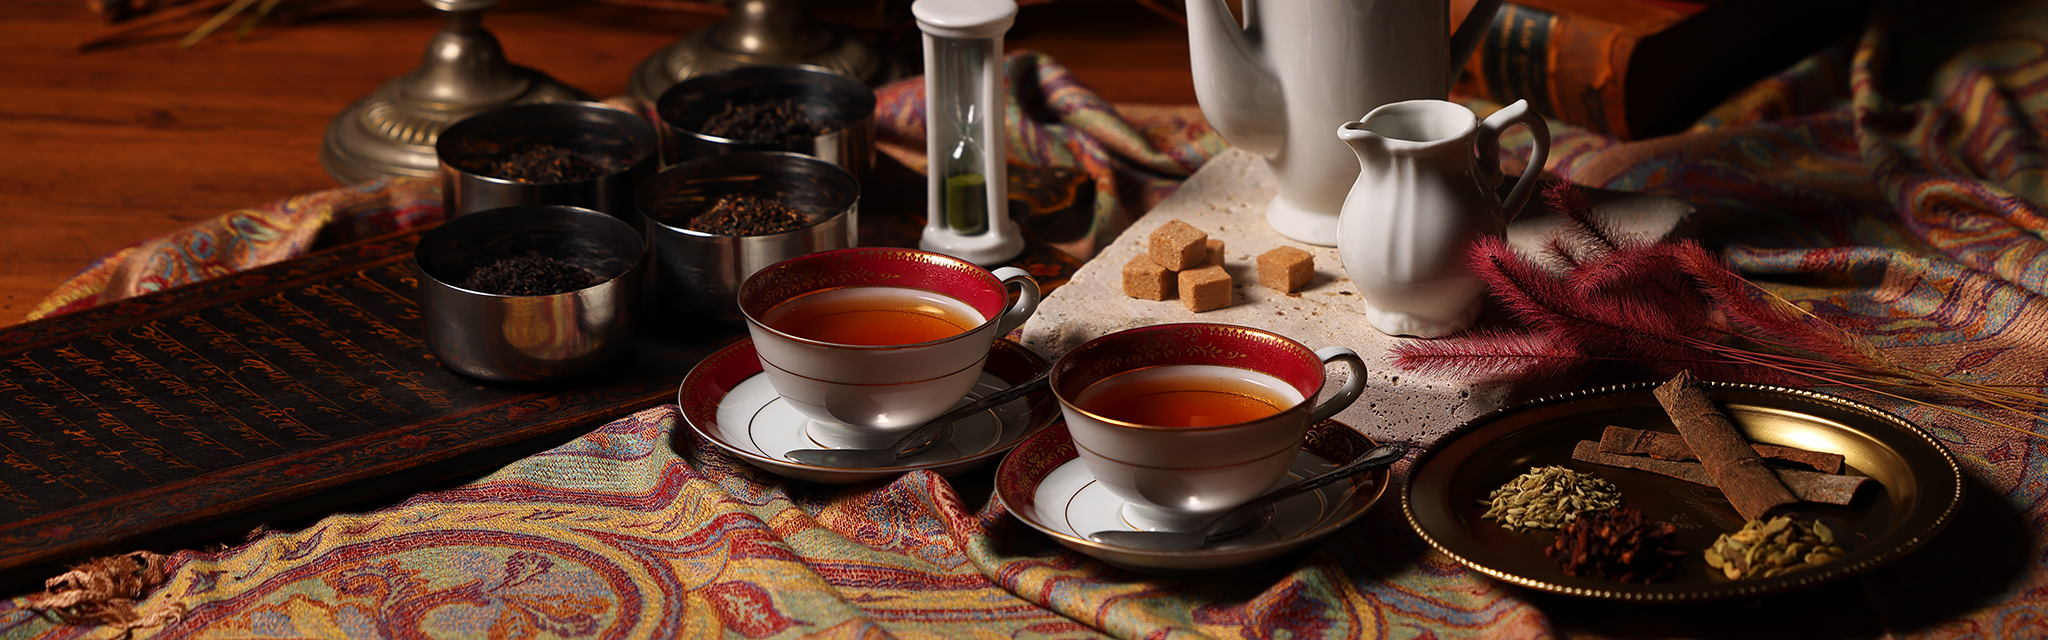 インド原産紅茶のテーブルセット